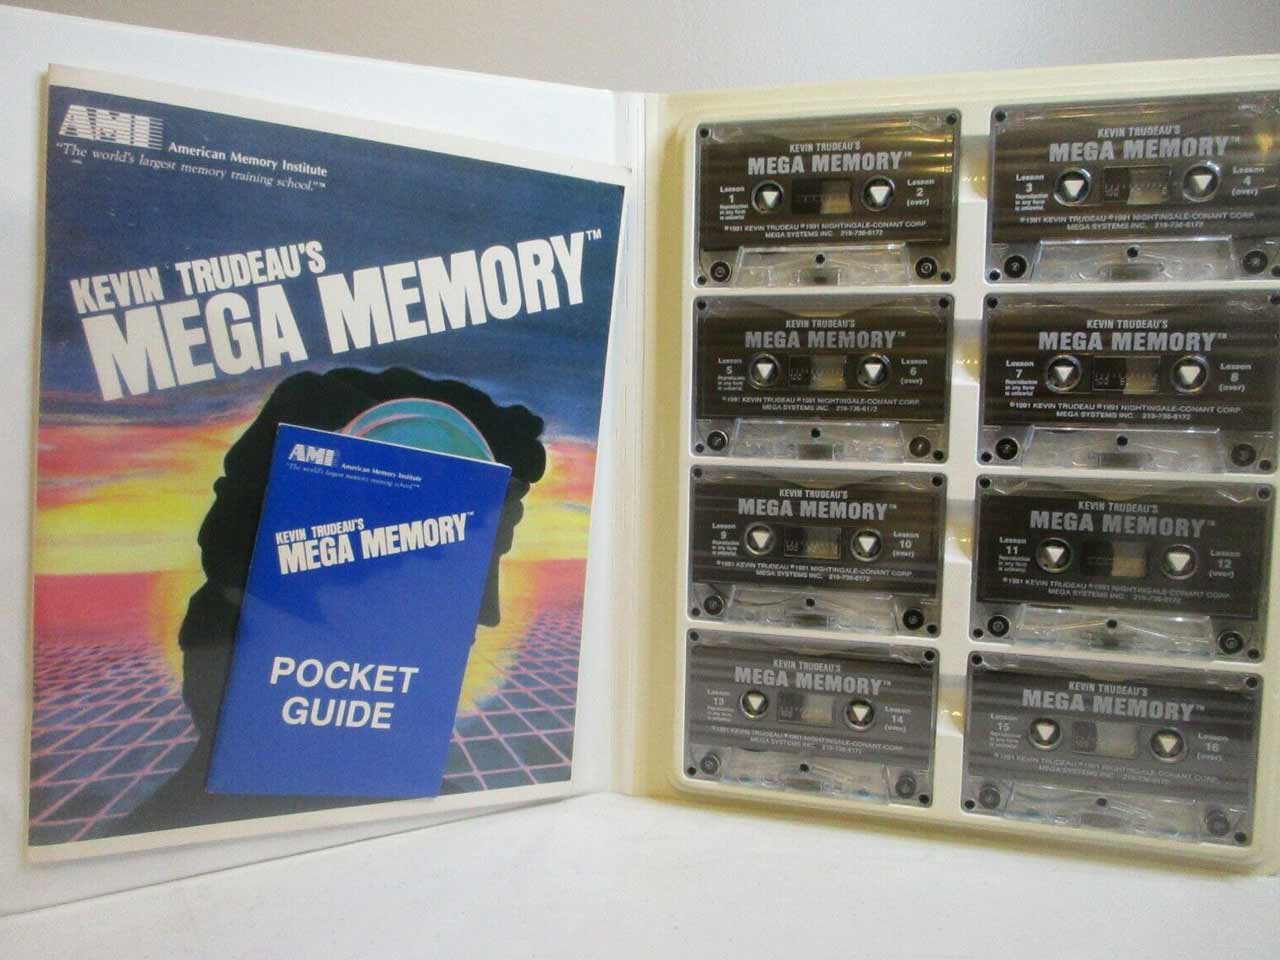 凯文·特鲁多的超级记忆音频程序的磁带。